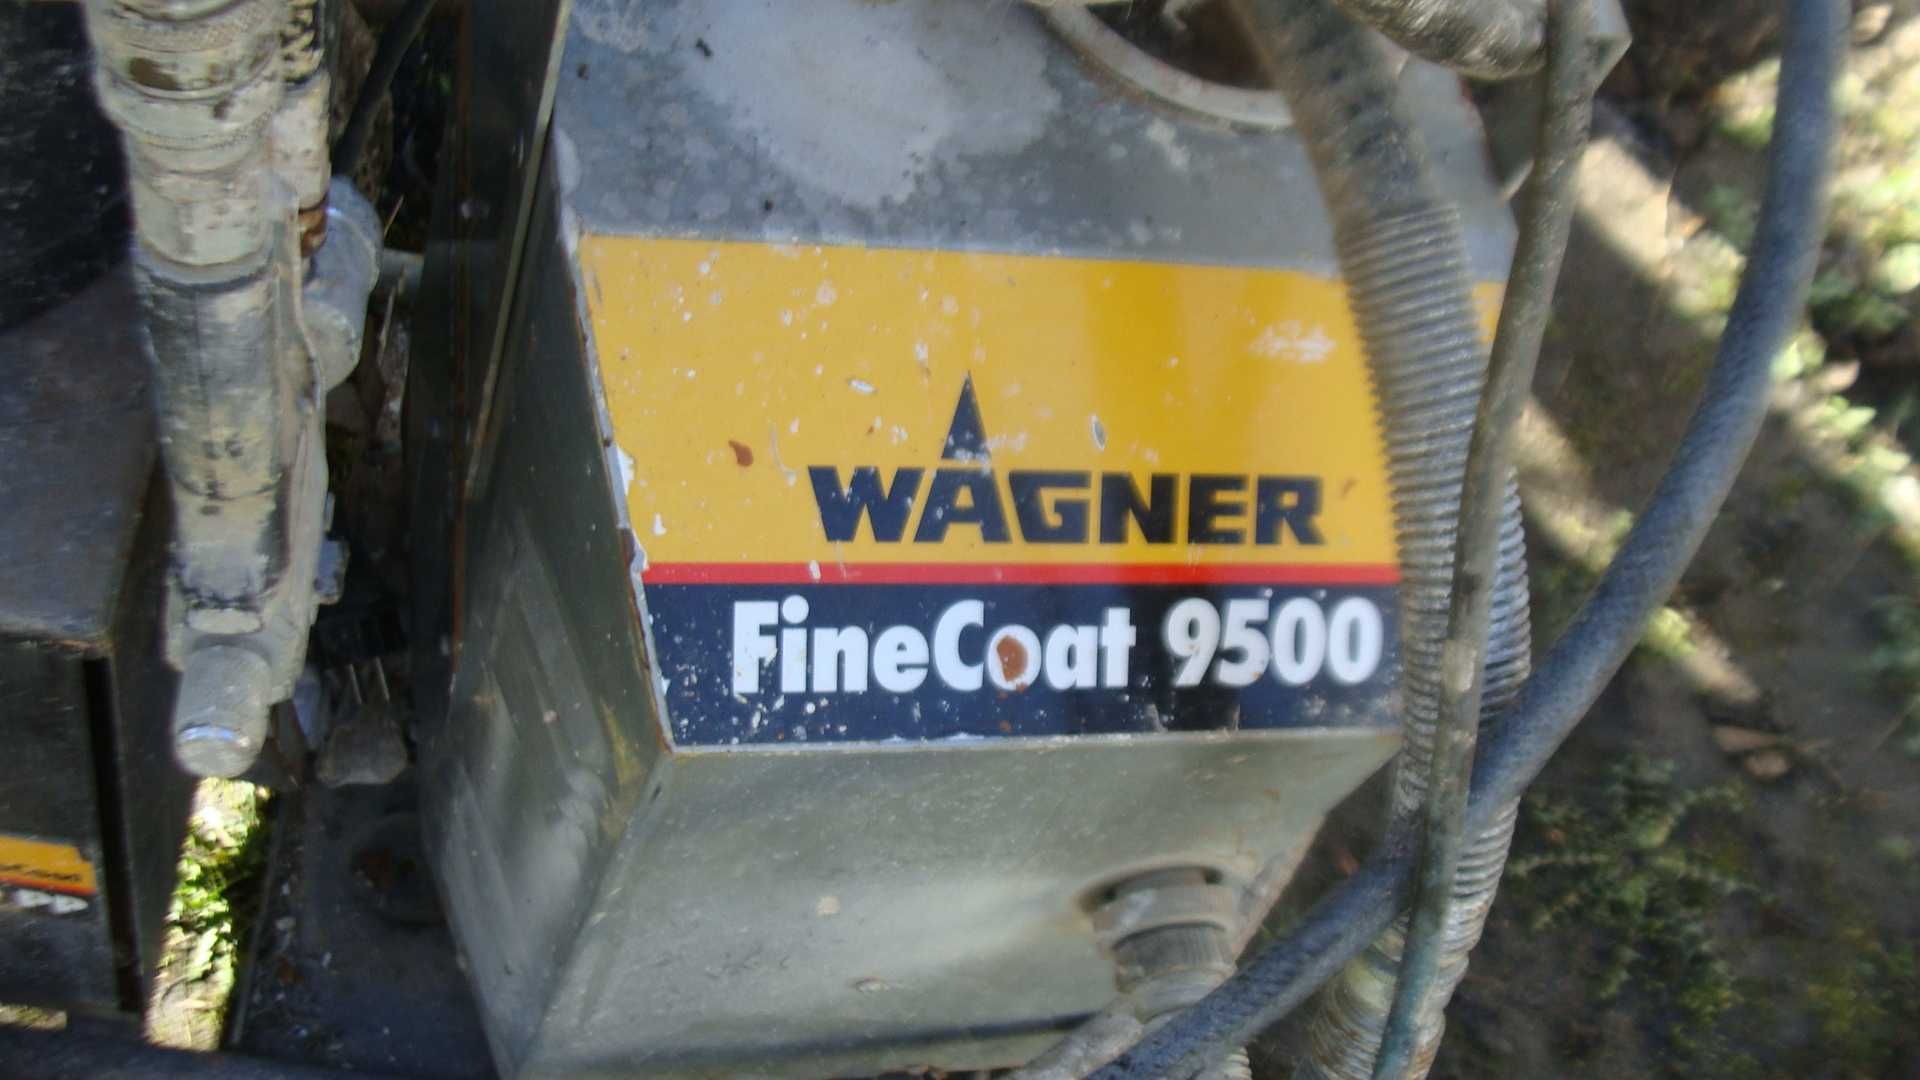 Agregat malarski FineCoat 9500 Wagner